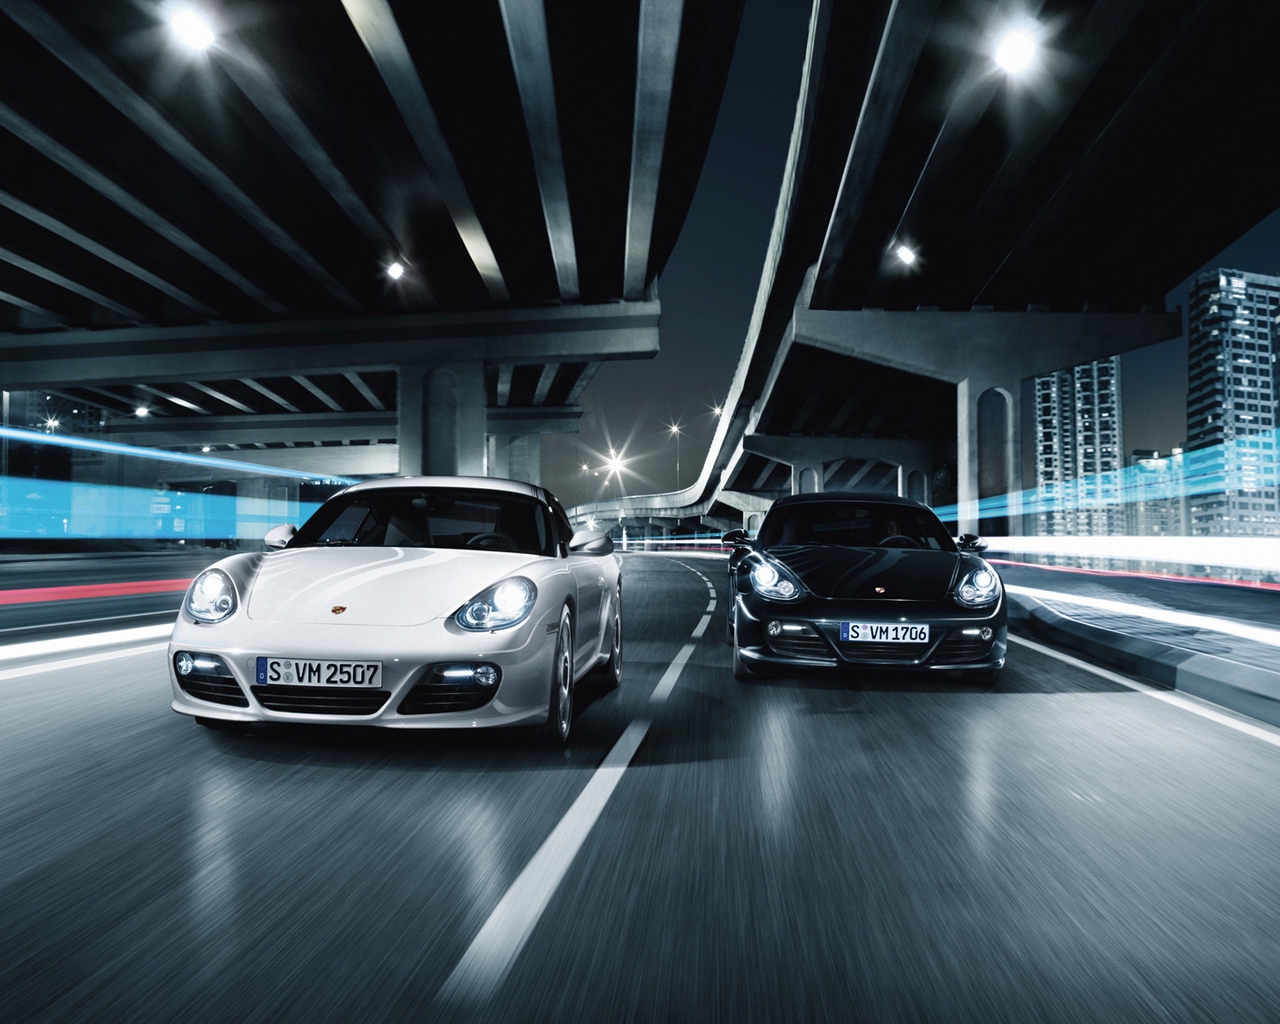 Porsche 911 GT2 Race for 1280 x 1024 resolution